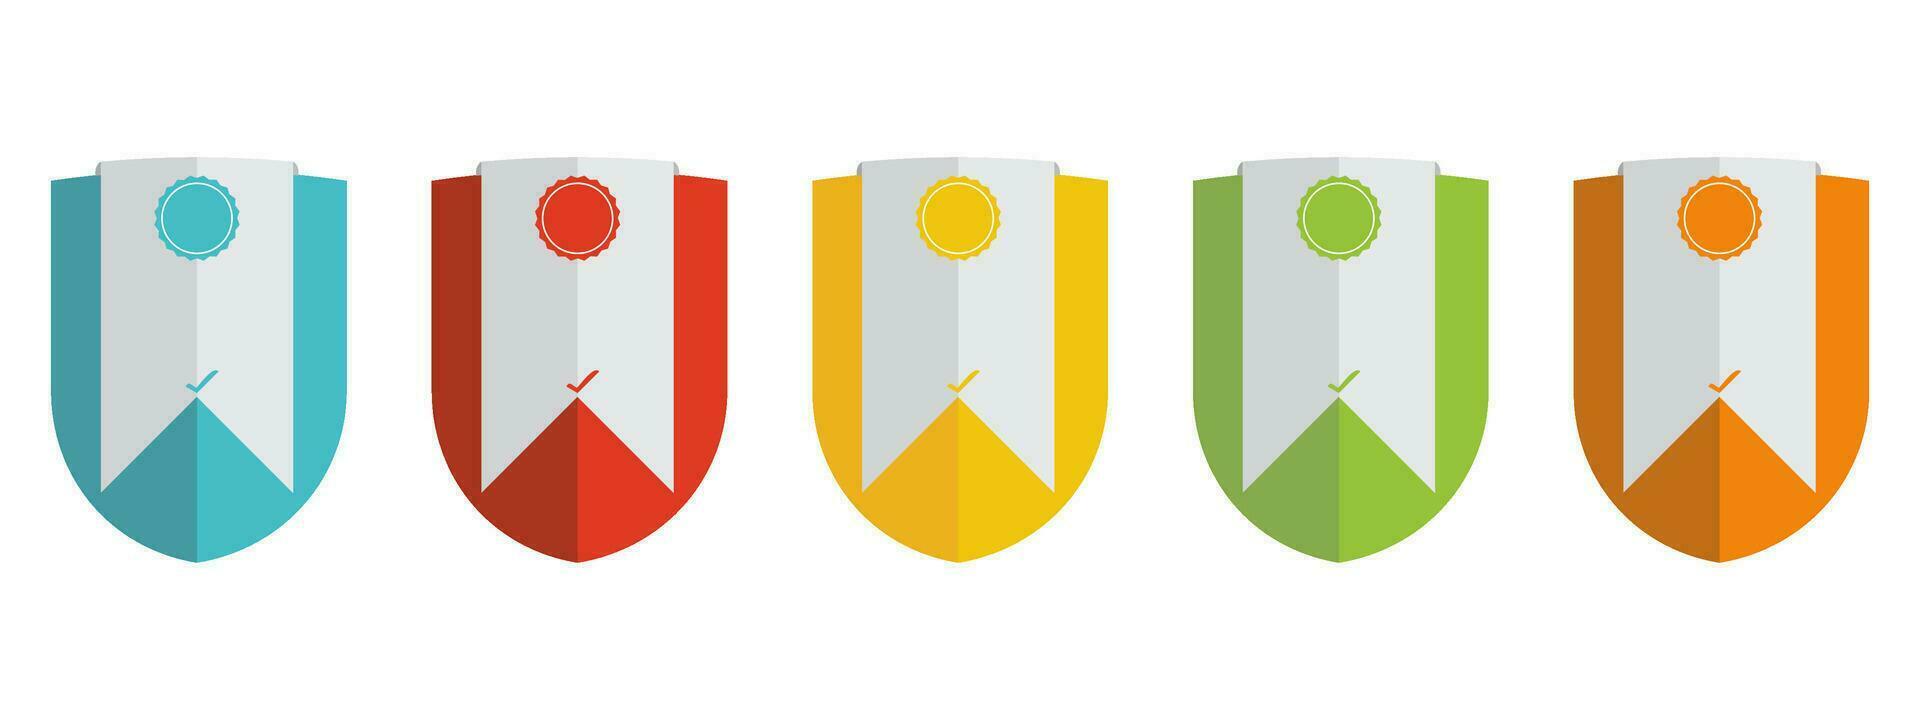 entreprise badge certificats vecteur illustration agréé logo conception.